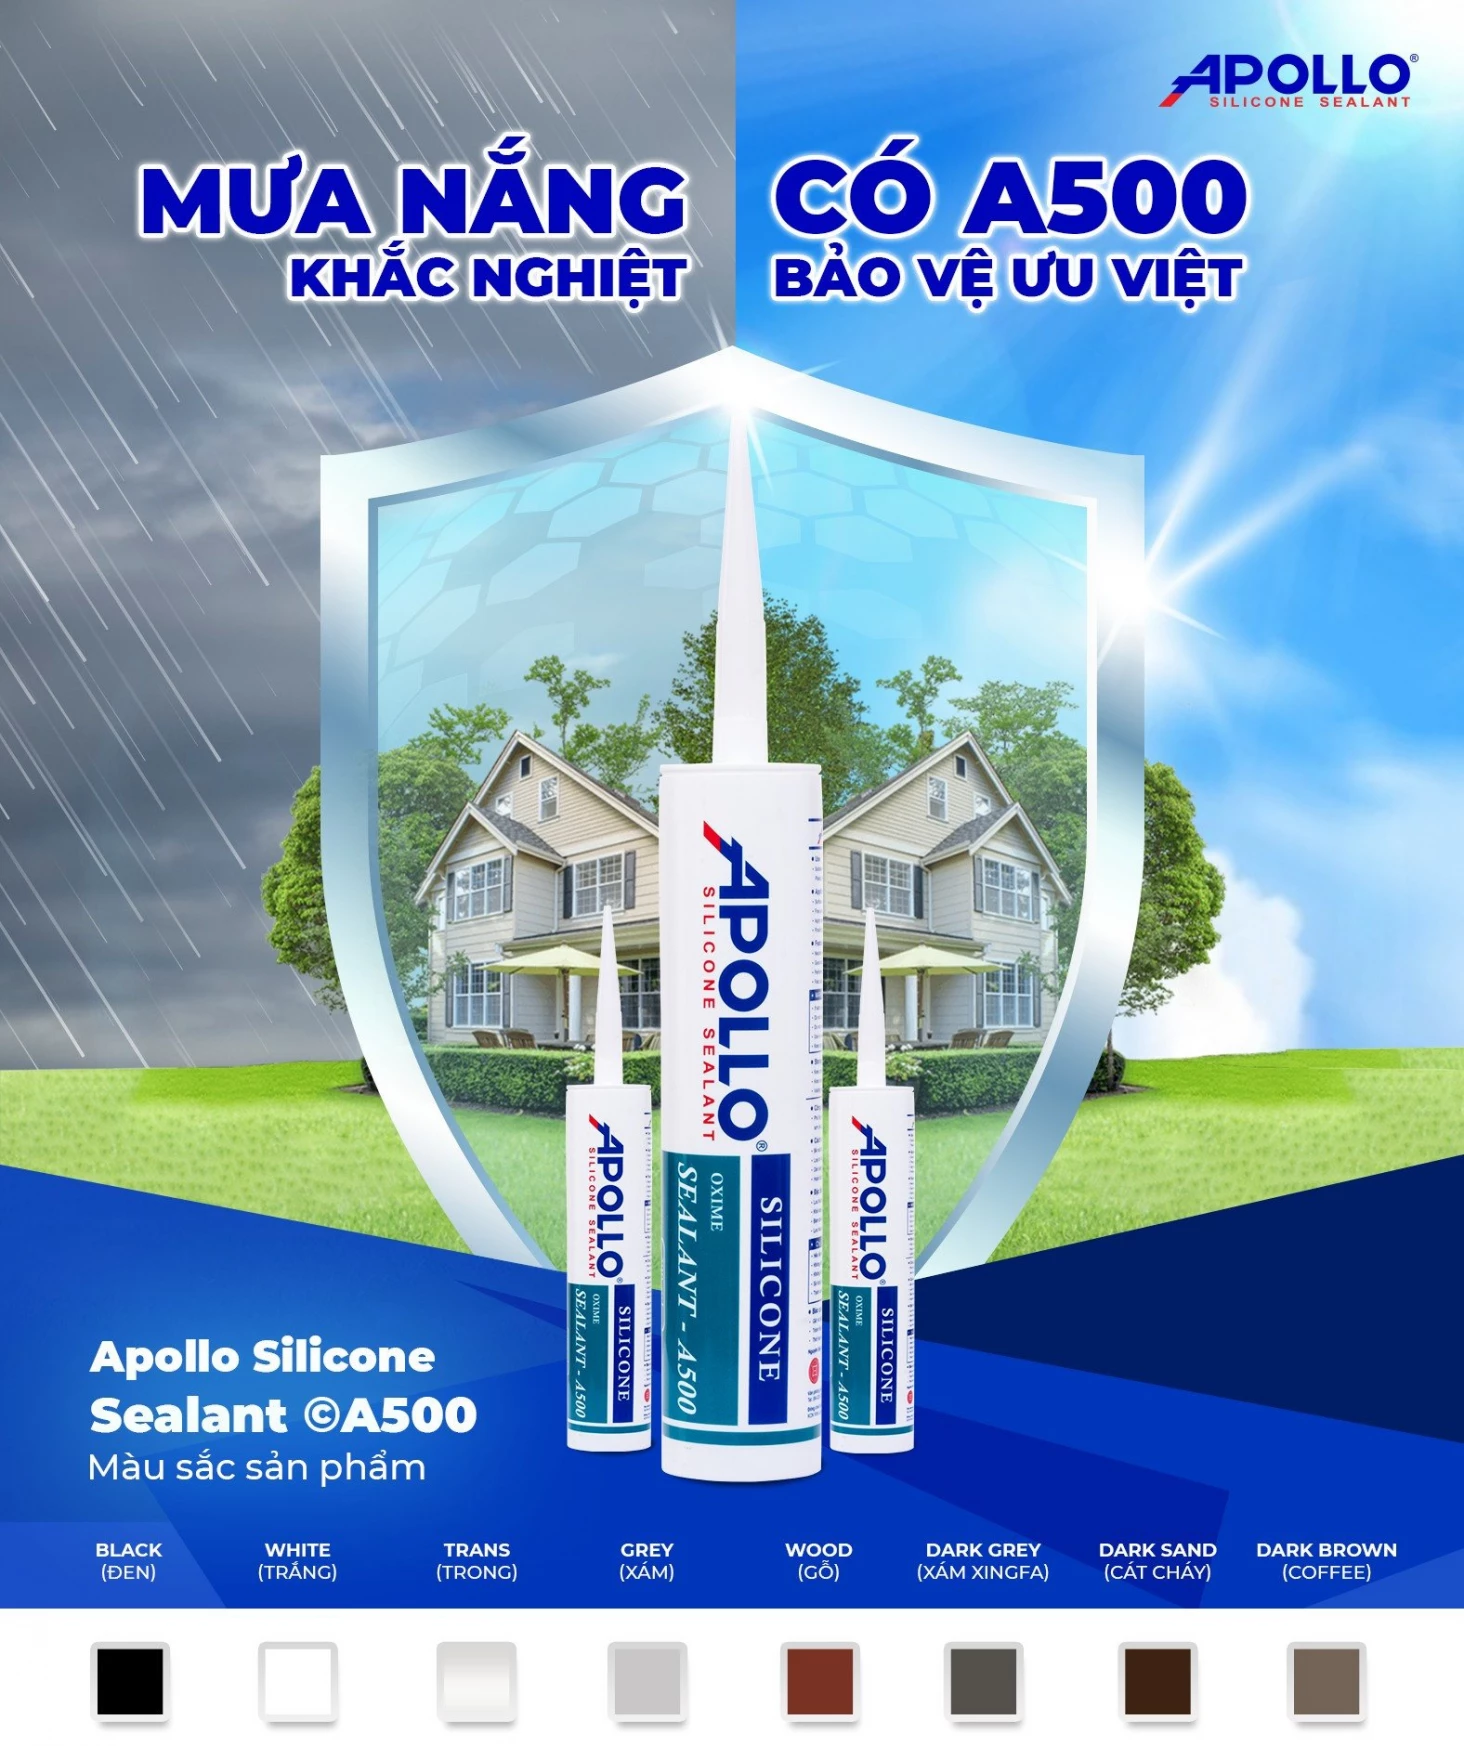 Apollo Silicone Sealant A500 - Giải pháp chống chịu mọi thời tiết khắc nghiệt cho công trình của bạn 